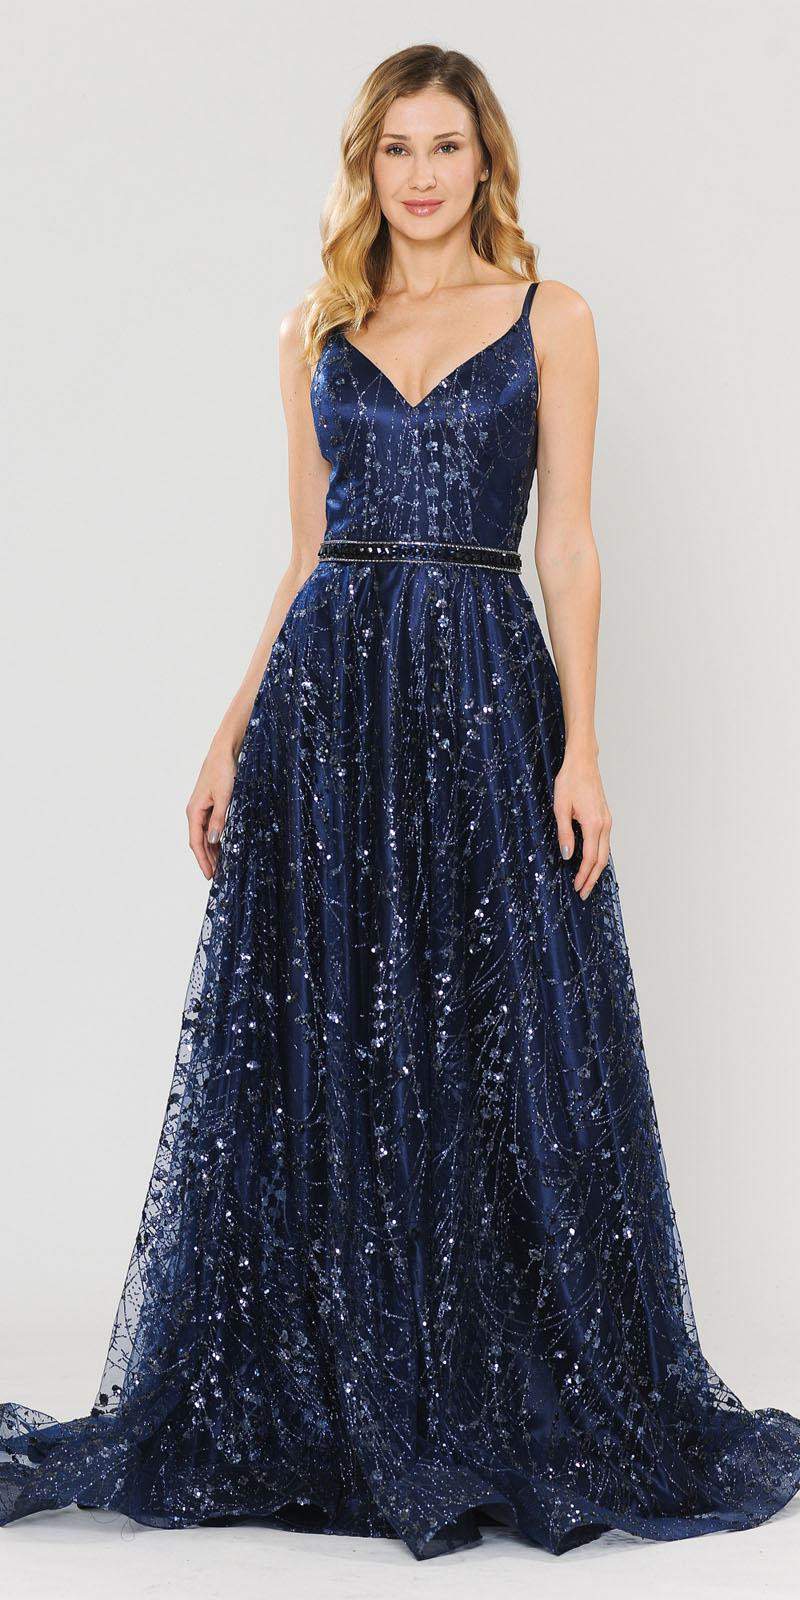 Poly USA 8450 Lace-Up Back Glittery A-Line Long Prom Dress Navy Blue